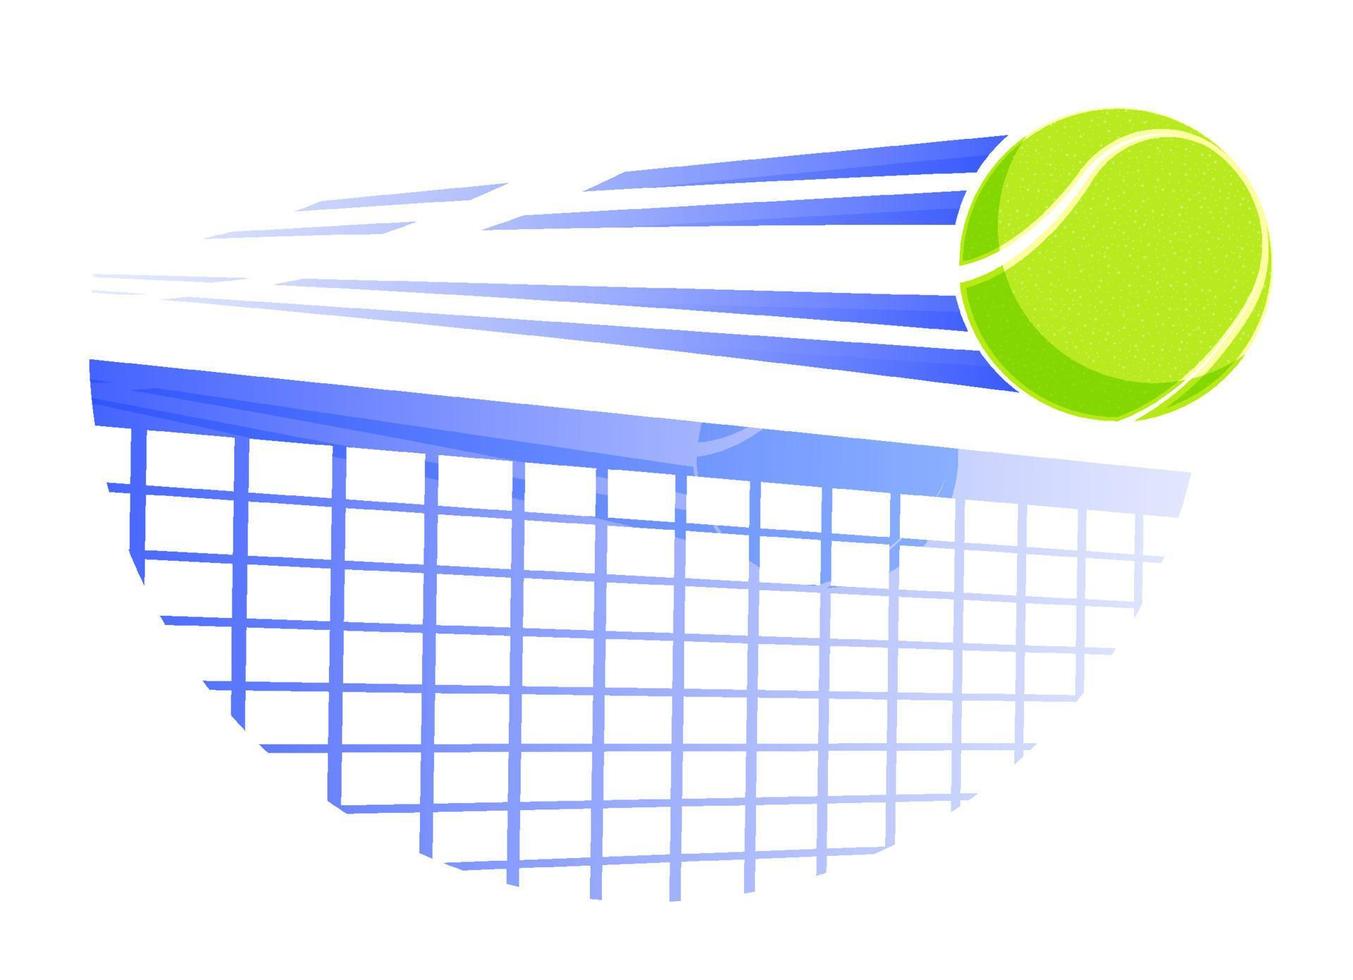 schneller tennisball fliegt mit großer geschwindigkeit auf tennisnetz. Sportausrüstung. symbol für mobile anwendung oder web. Vektor